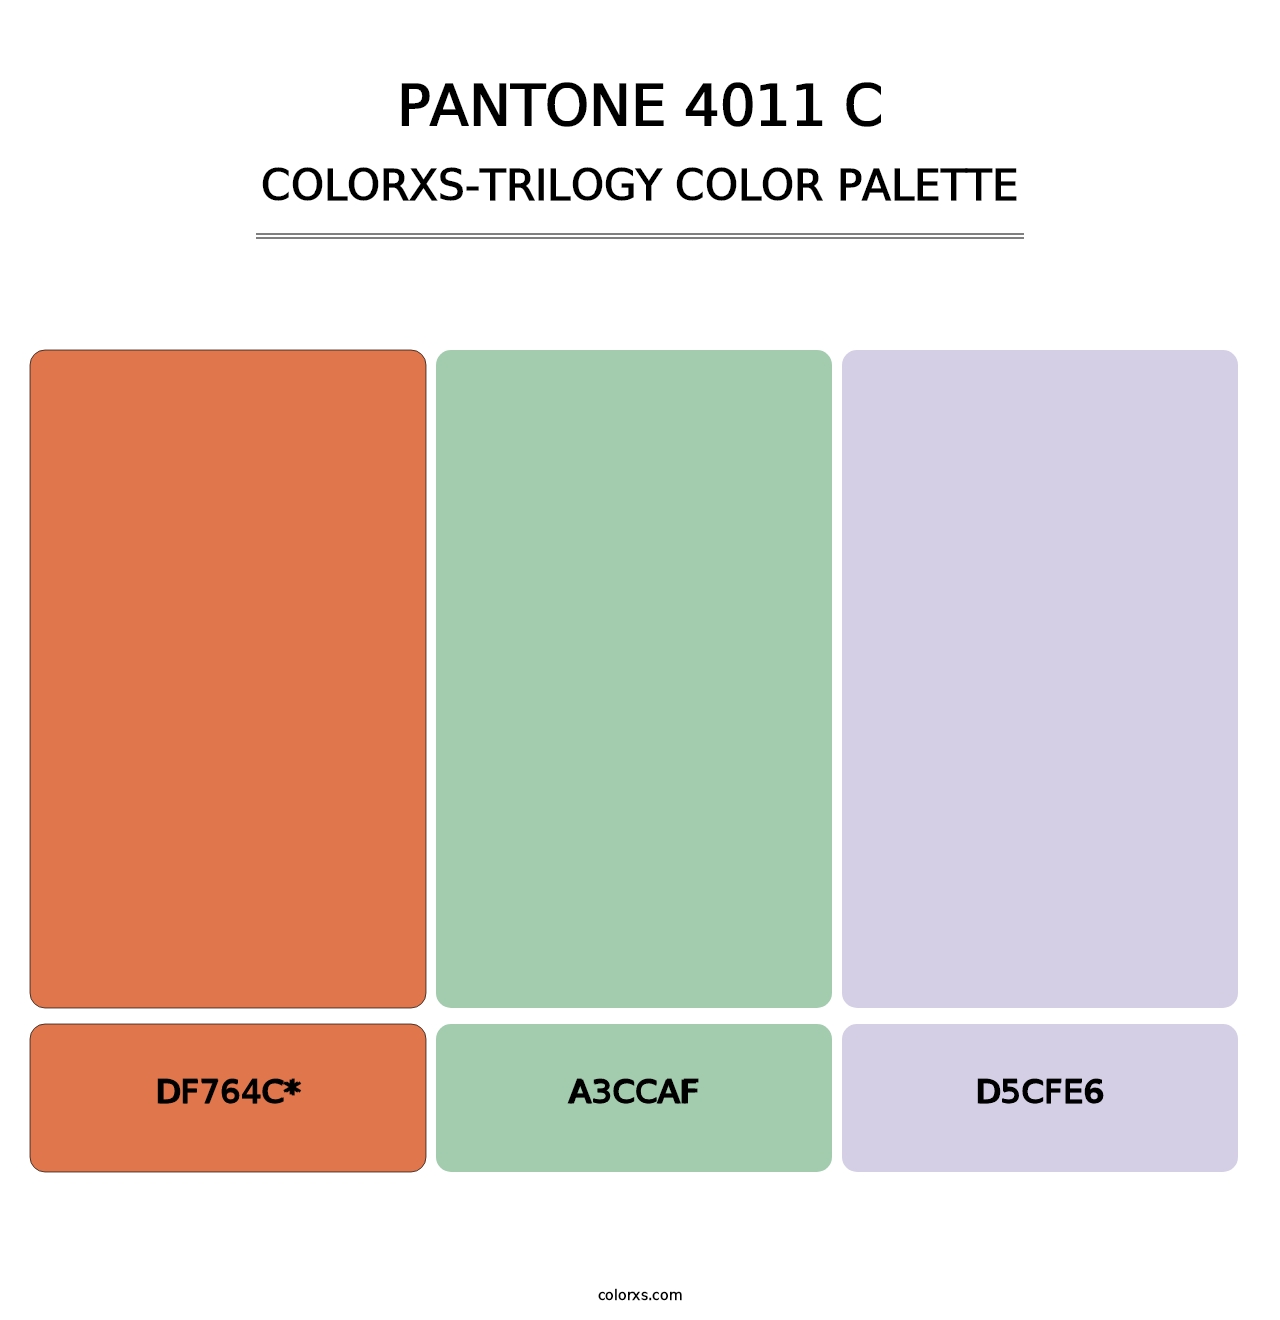 PANTONE 4011 C - Colorxs Trilogy Palette